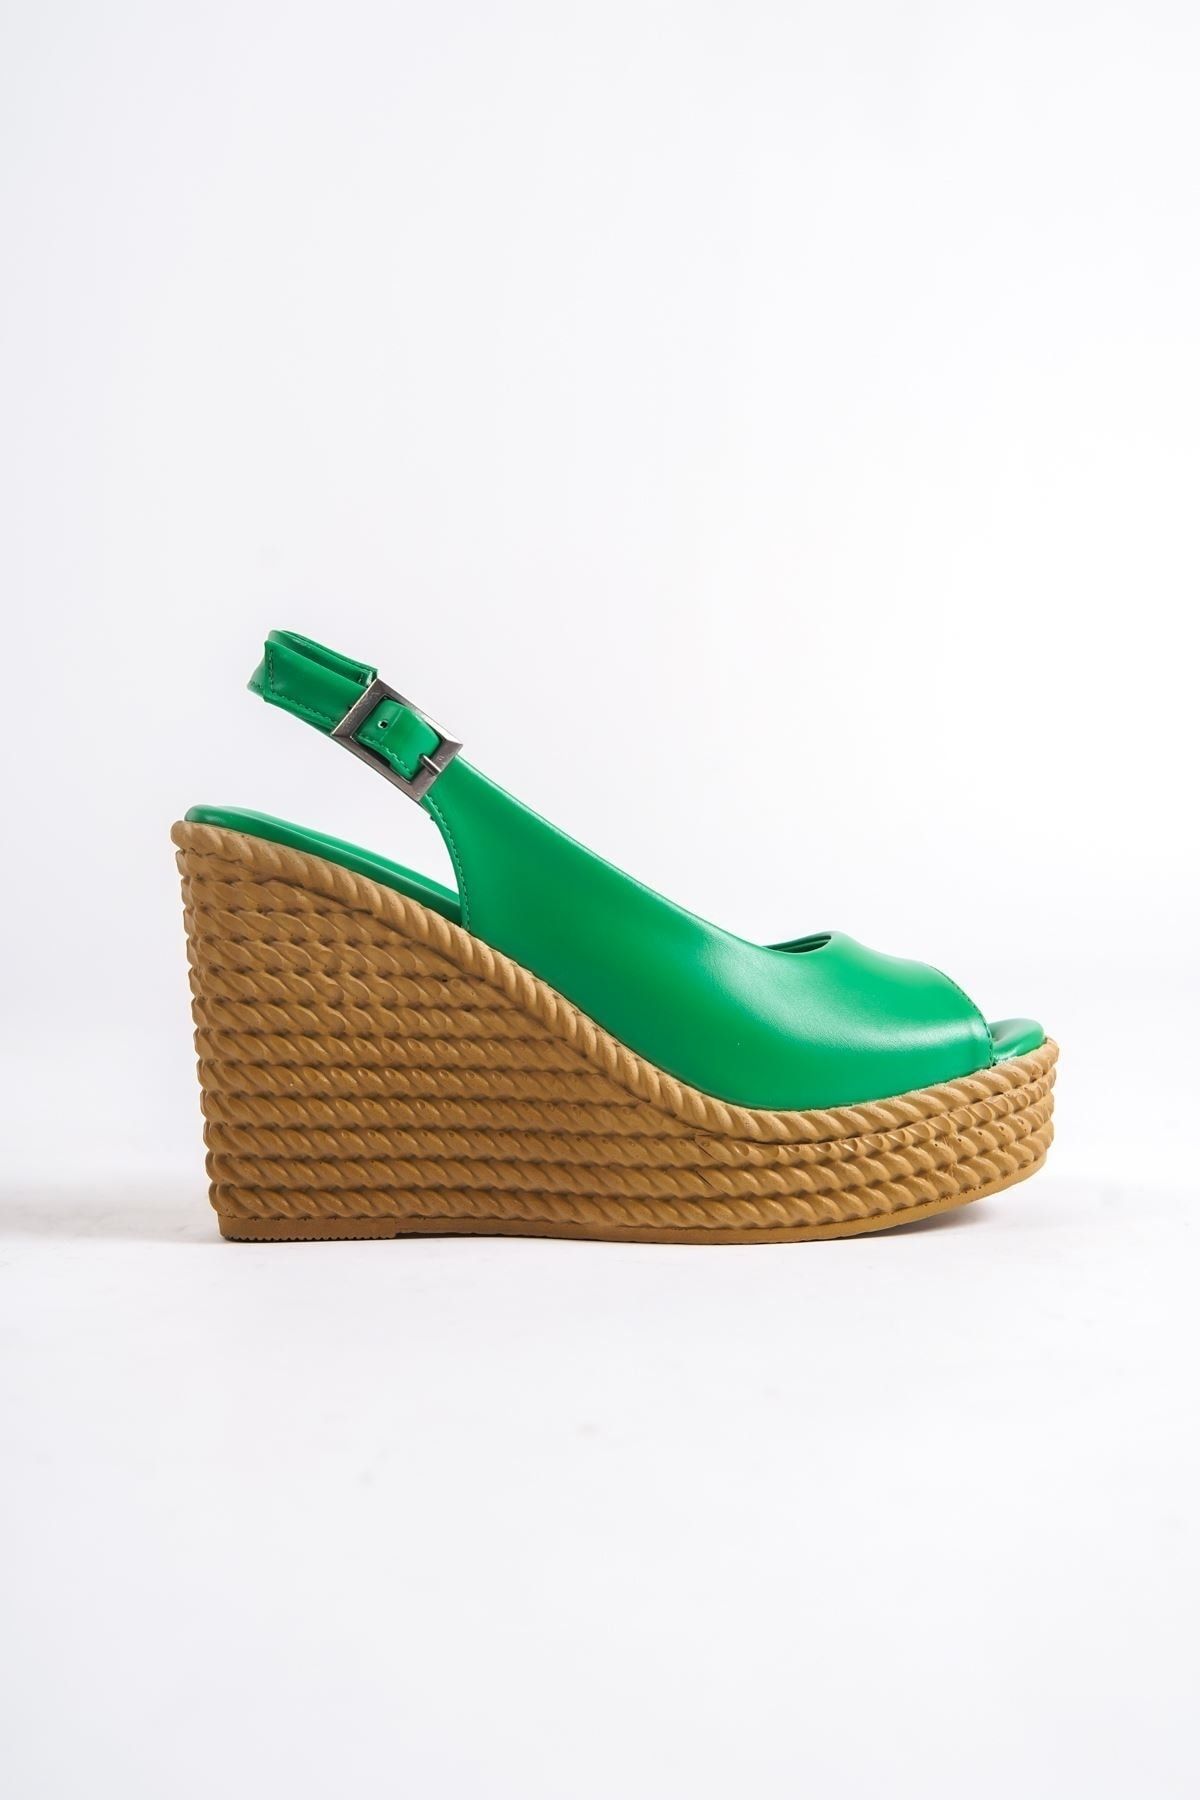 Papuçlarım Cenny Yeşil Mat Deri Dolgu Topuklu Kadın Ayakkabı